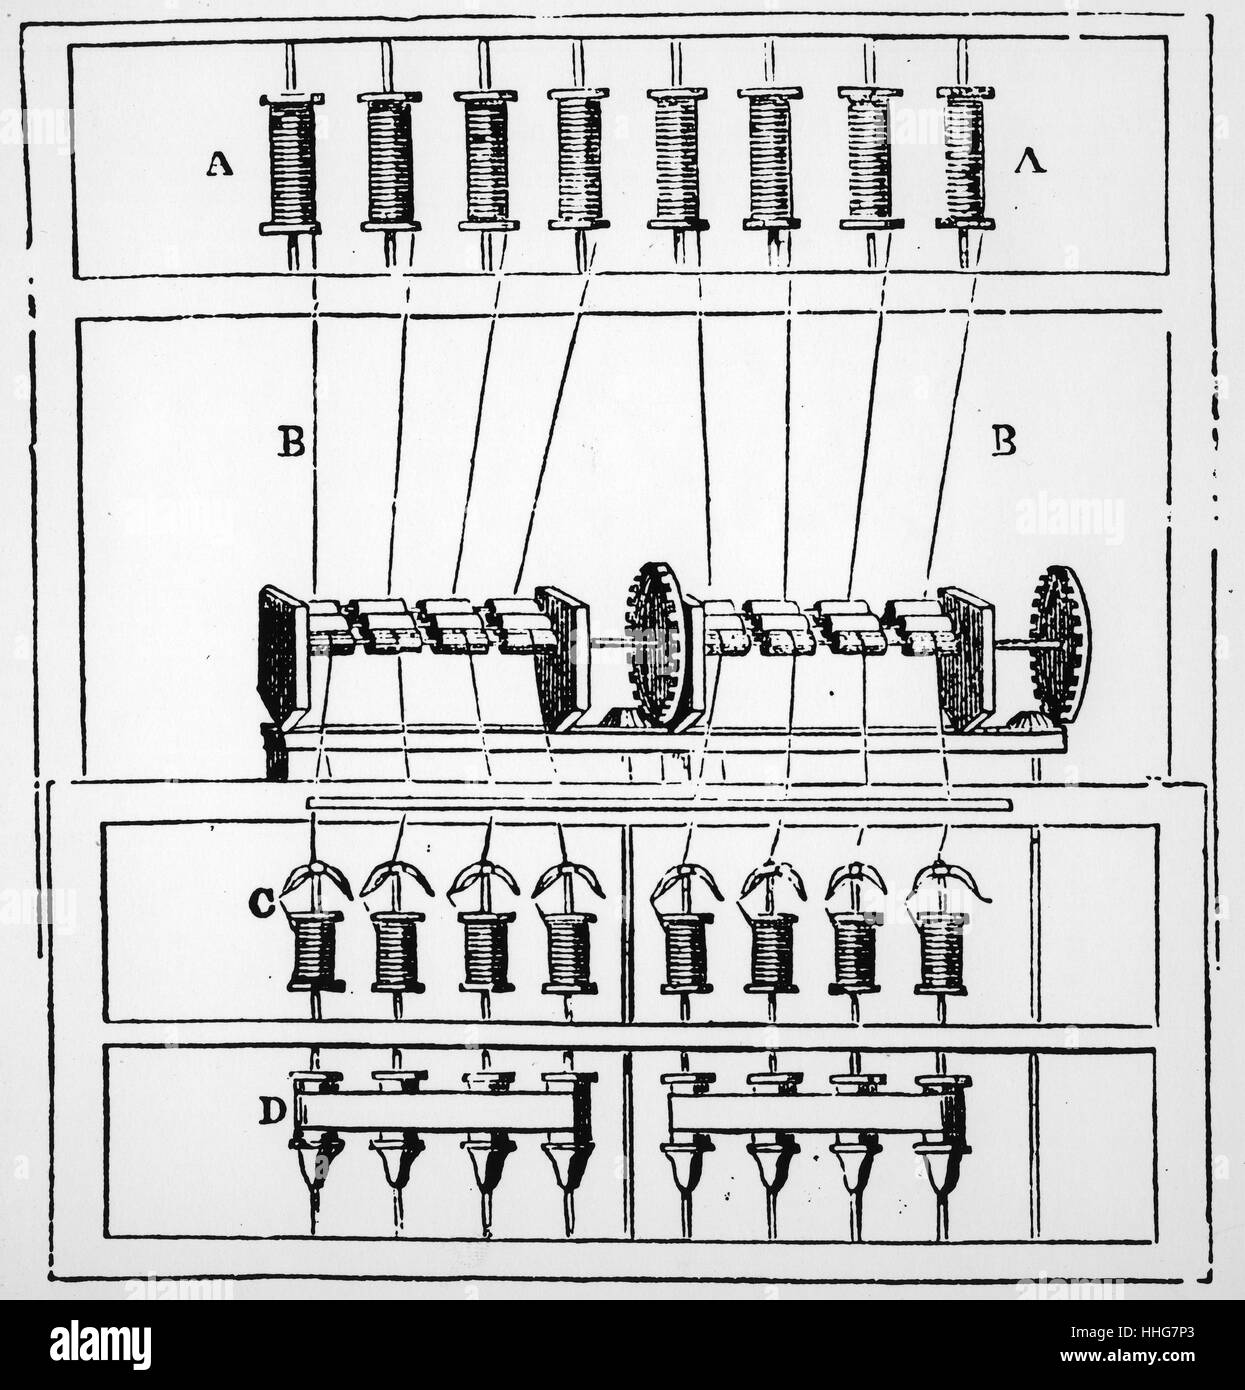 L'eau du schéma d'Arkwright, 1878. L'eau est le nom donné à un châssis tournant fonctionnant à l'eau qui a été un moyen facile de créer des fil de coton. La première fois que la machine a été utilisée en 1768. Il a été en mesure de tourner 128 threads à la fois, ce qui était le plus facile et plus rapide que jamais. Il a été mis au point par Richard Arkwright, qui a breveté la technologie en 1767 Banque D'Images